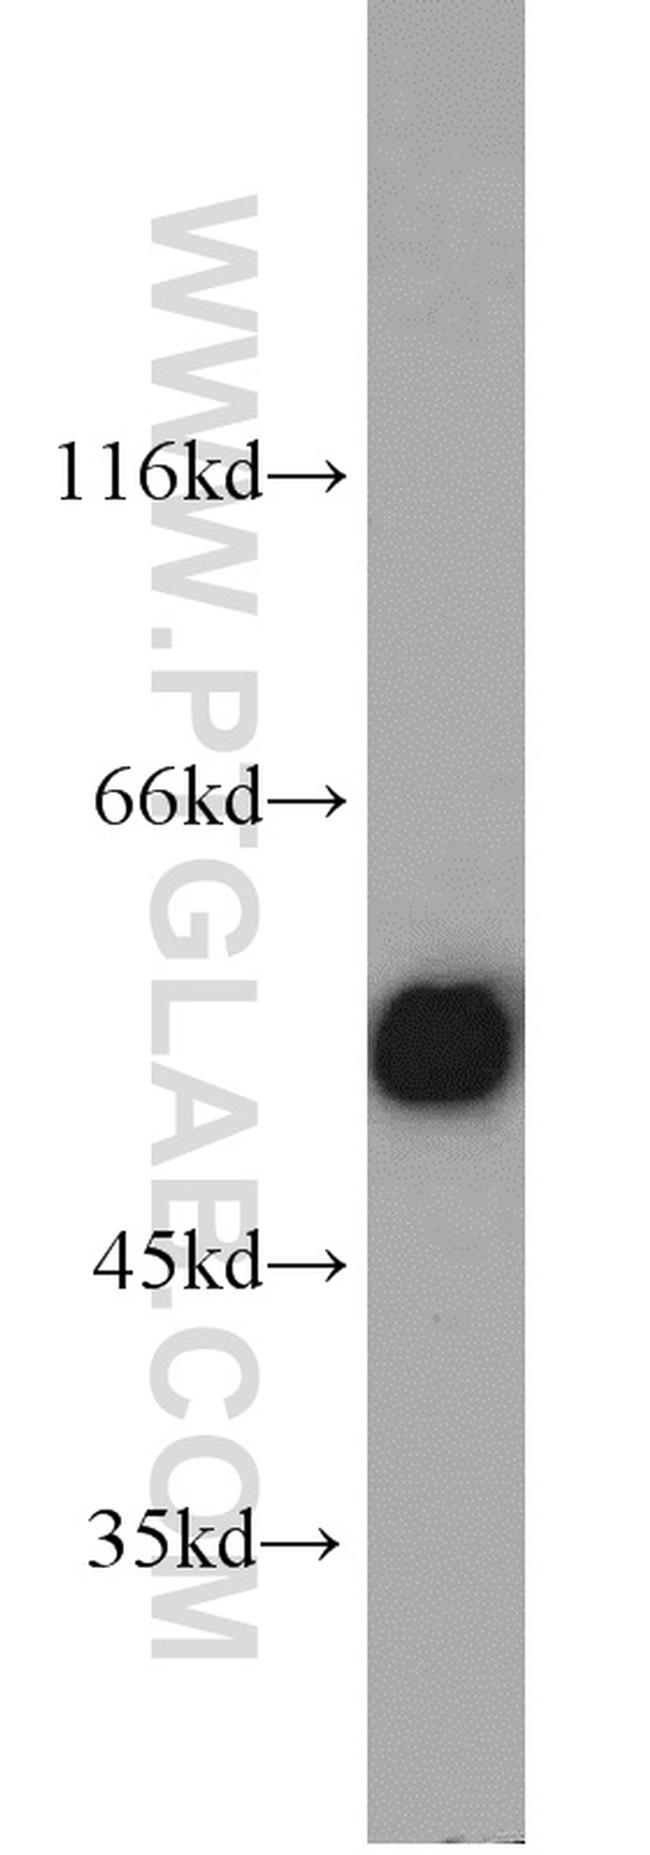 ALDH2 Antibody in Western Blot (WB)